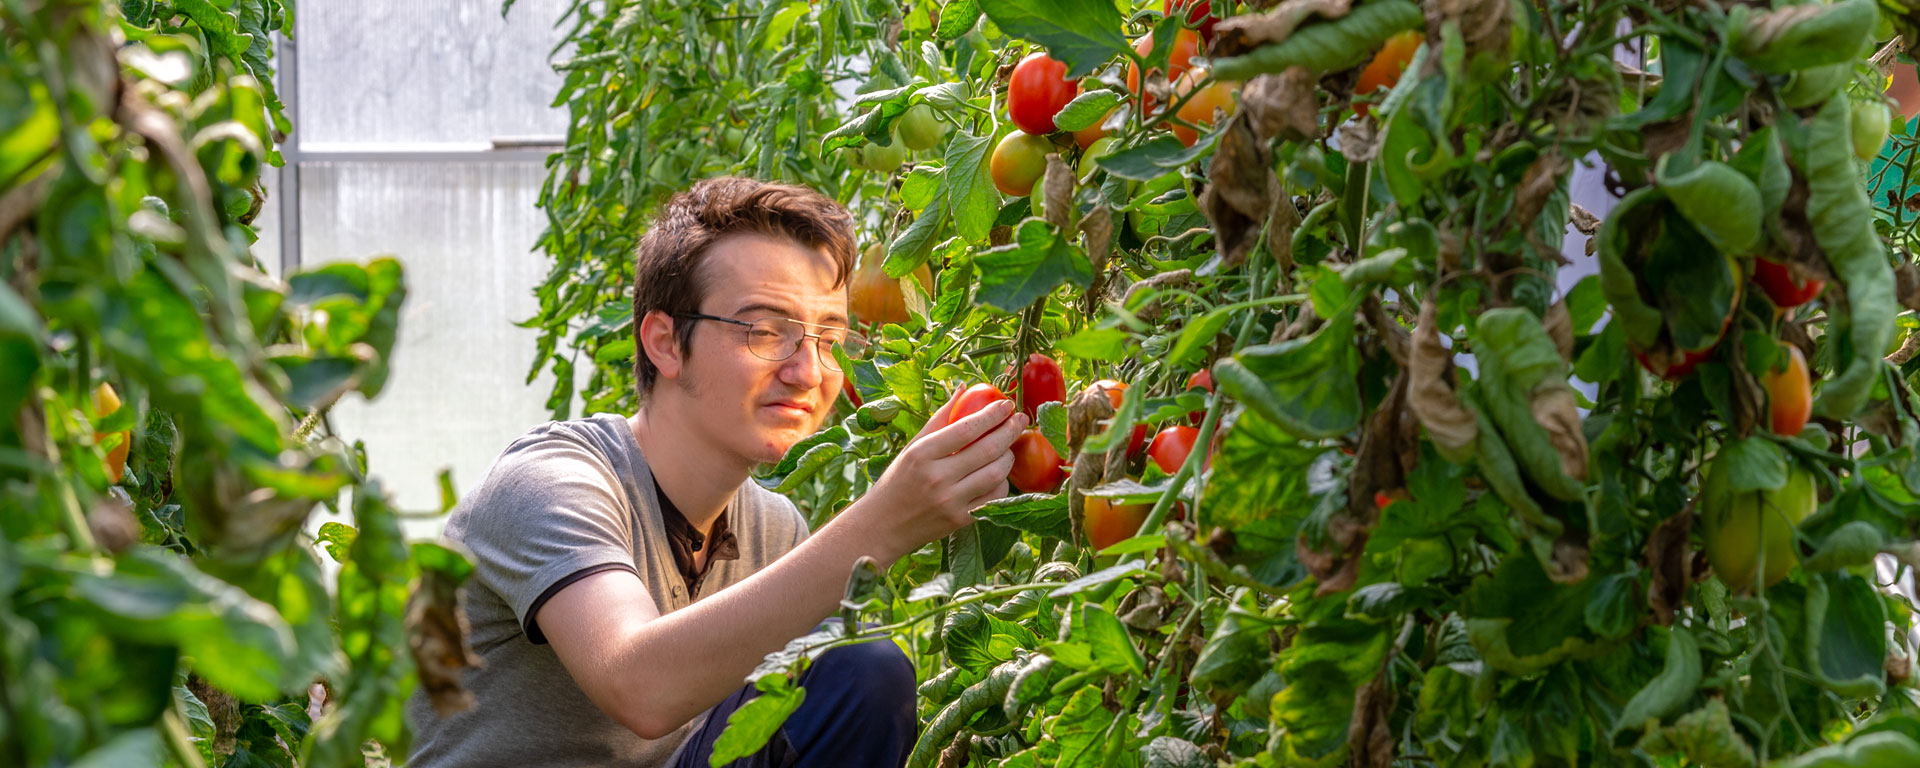 Ein Klient der Augustinum Gärtnerei Hollern erntet Tomaten